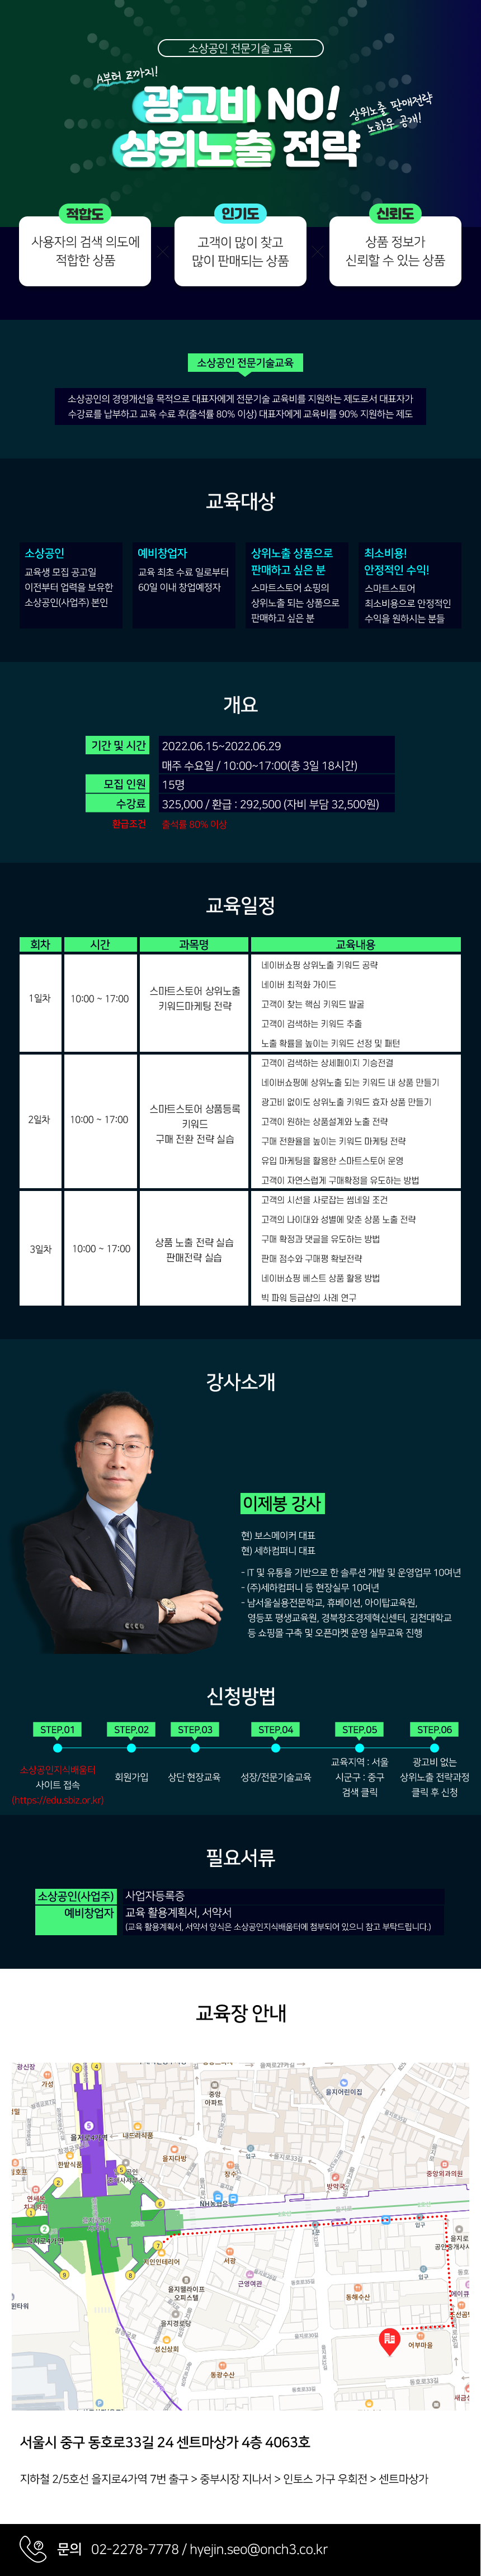 20220615_상위노출과정 복사.png